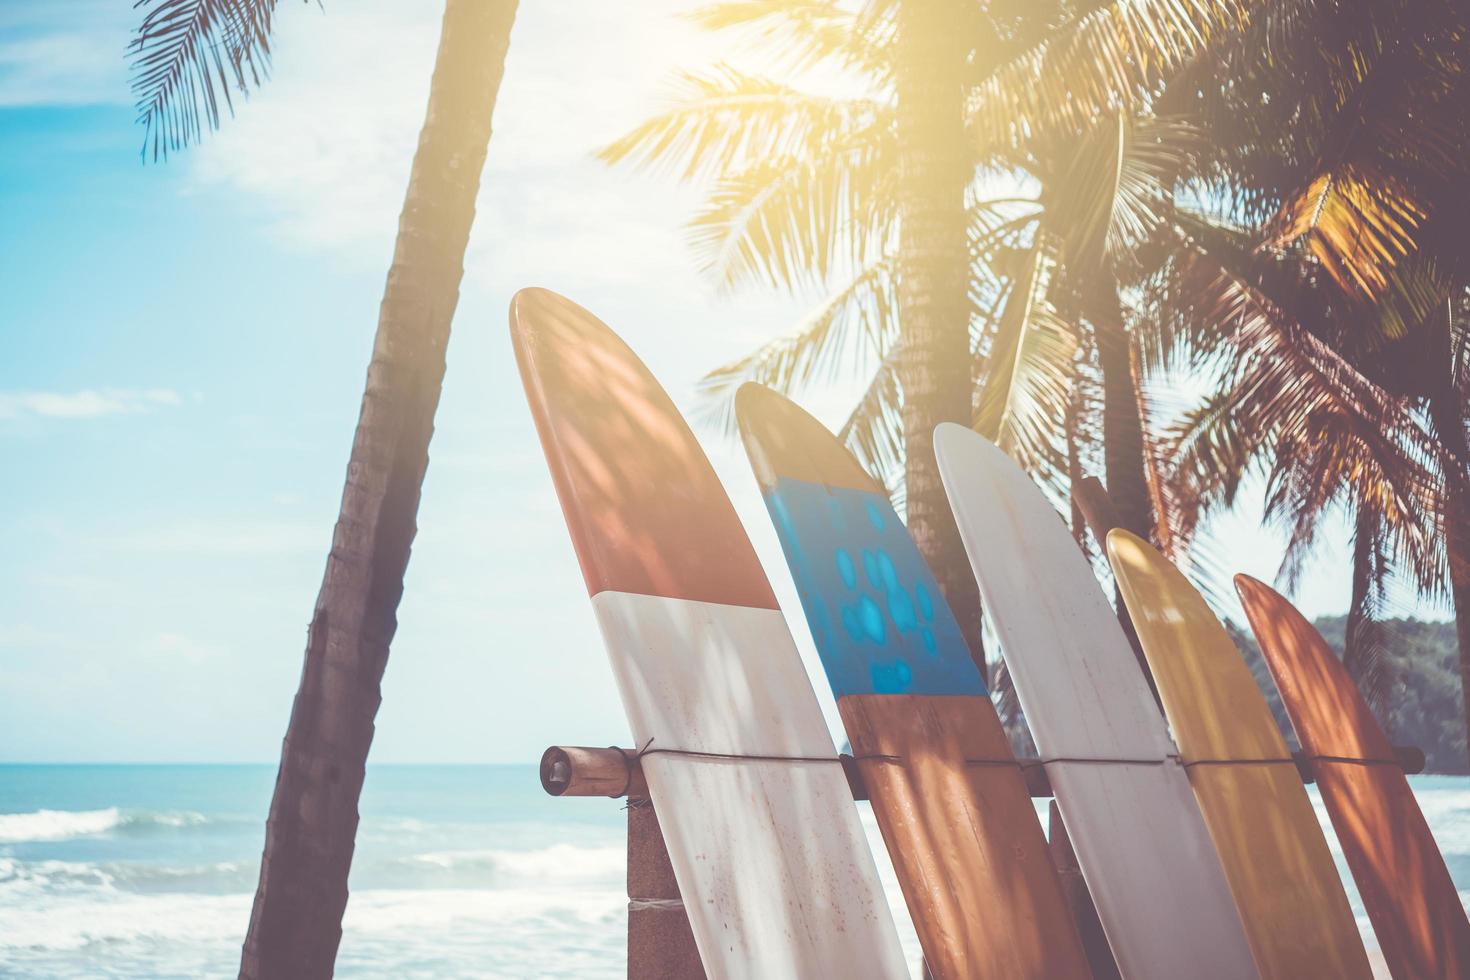 många surfbrädor bredvid kokospalmer på sommarstranden med solljus och blå himmel foto